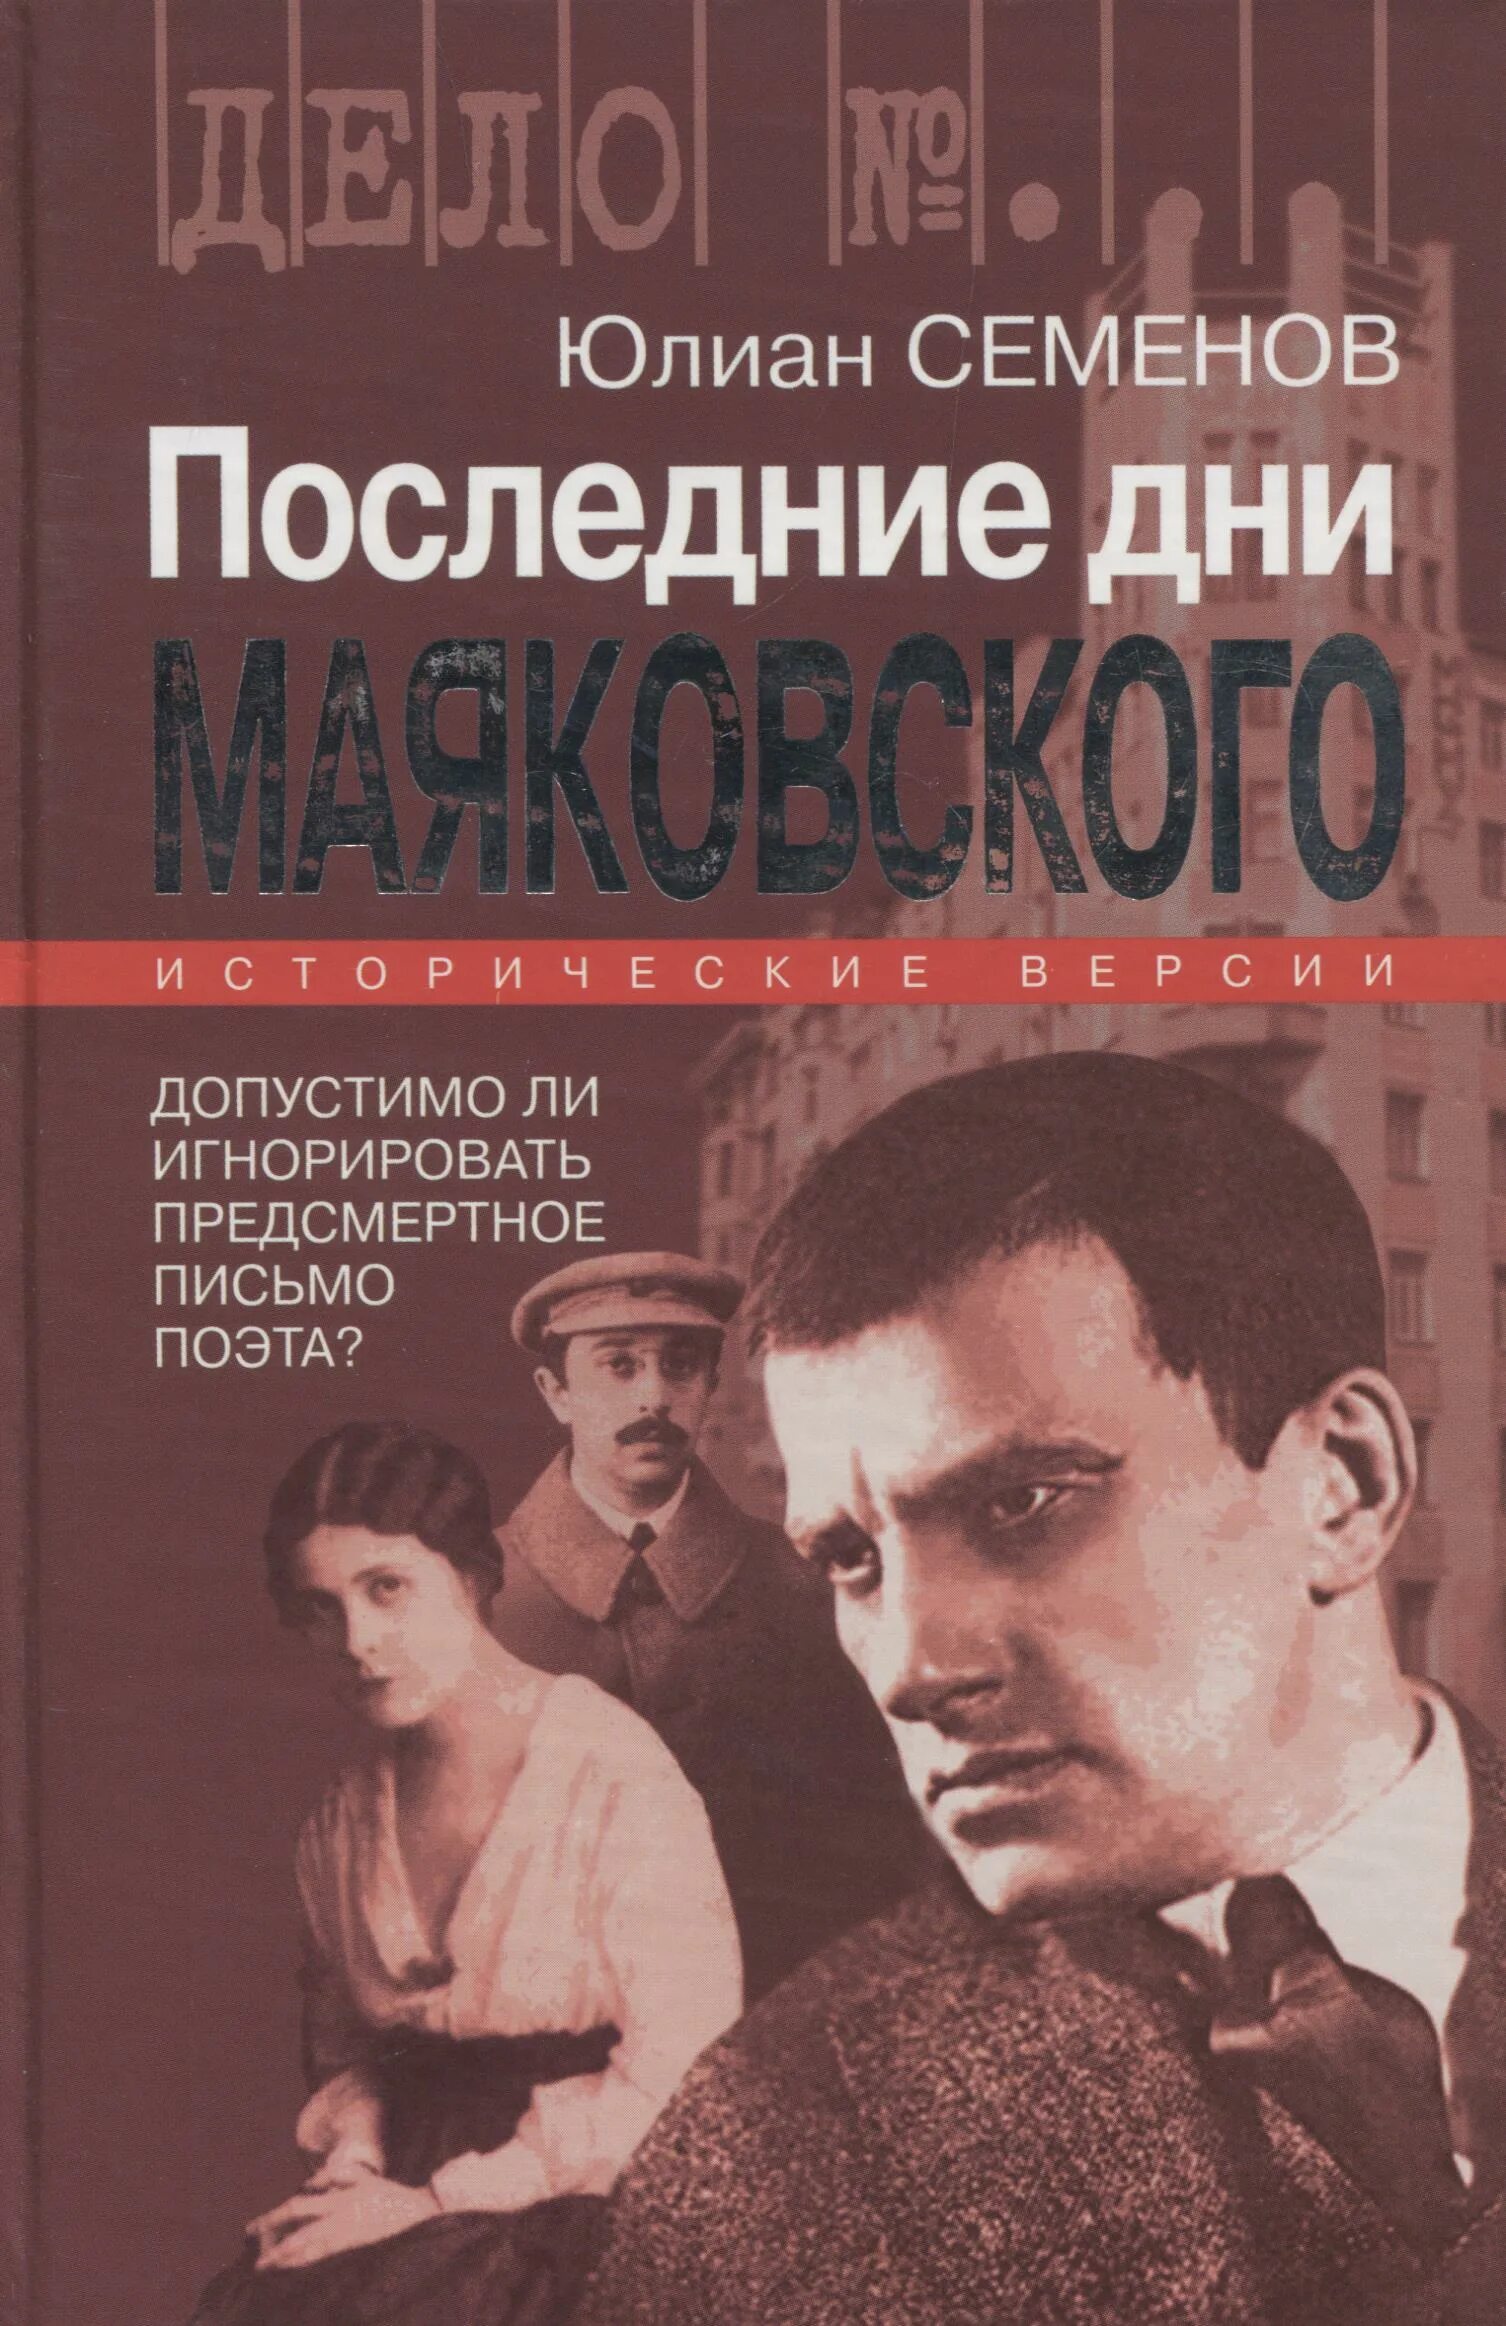 Последние книги Юлиана Семенова. Маяковский последние дни. Книга последний день.